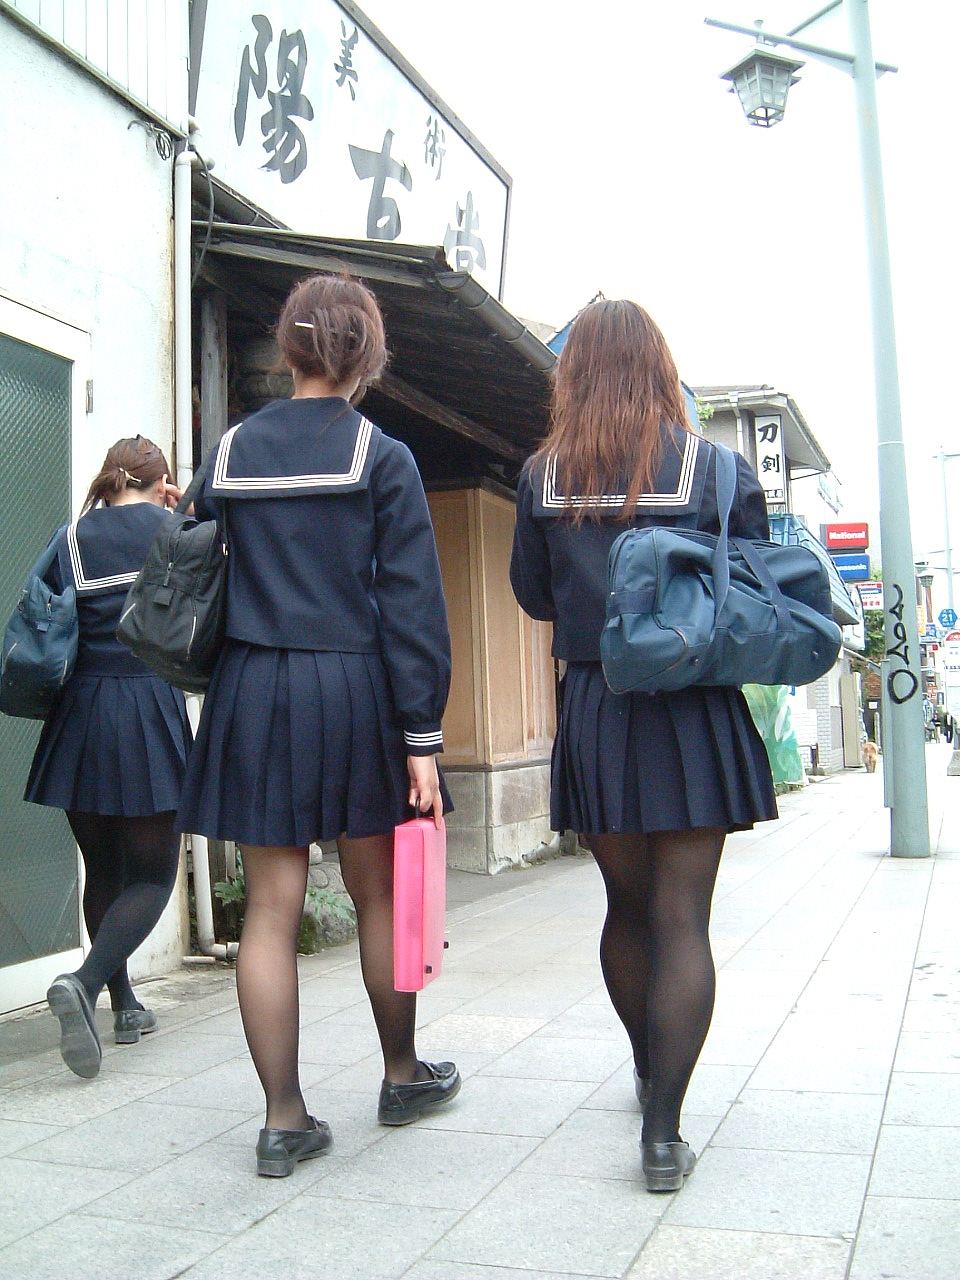 【冬服 パンチラ】黒タイツを履いた女子高生たちを華麗に盗撮 (画像36枚)016